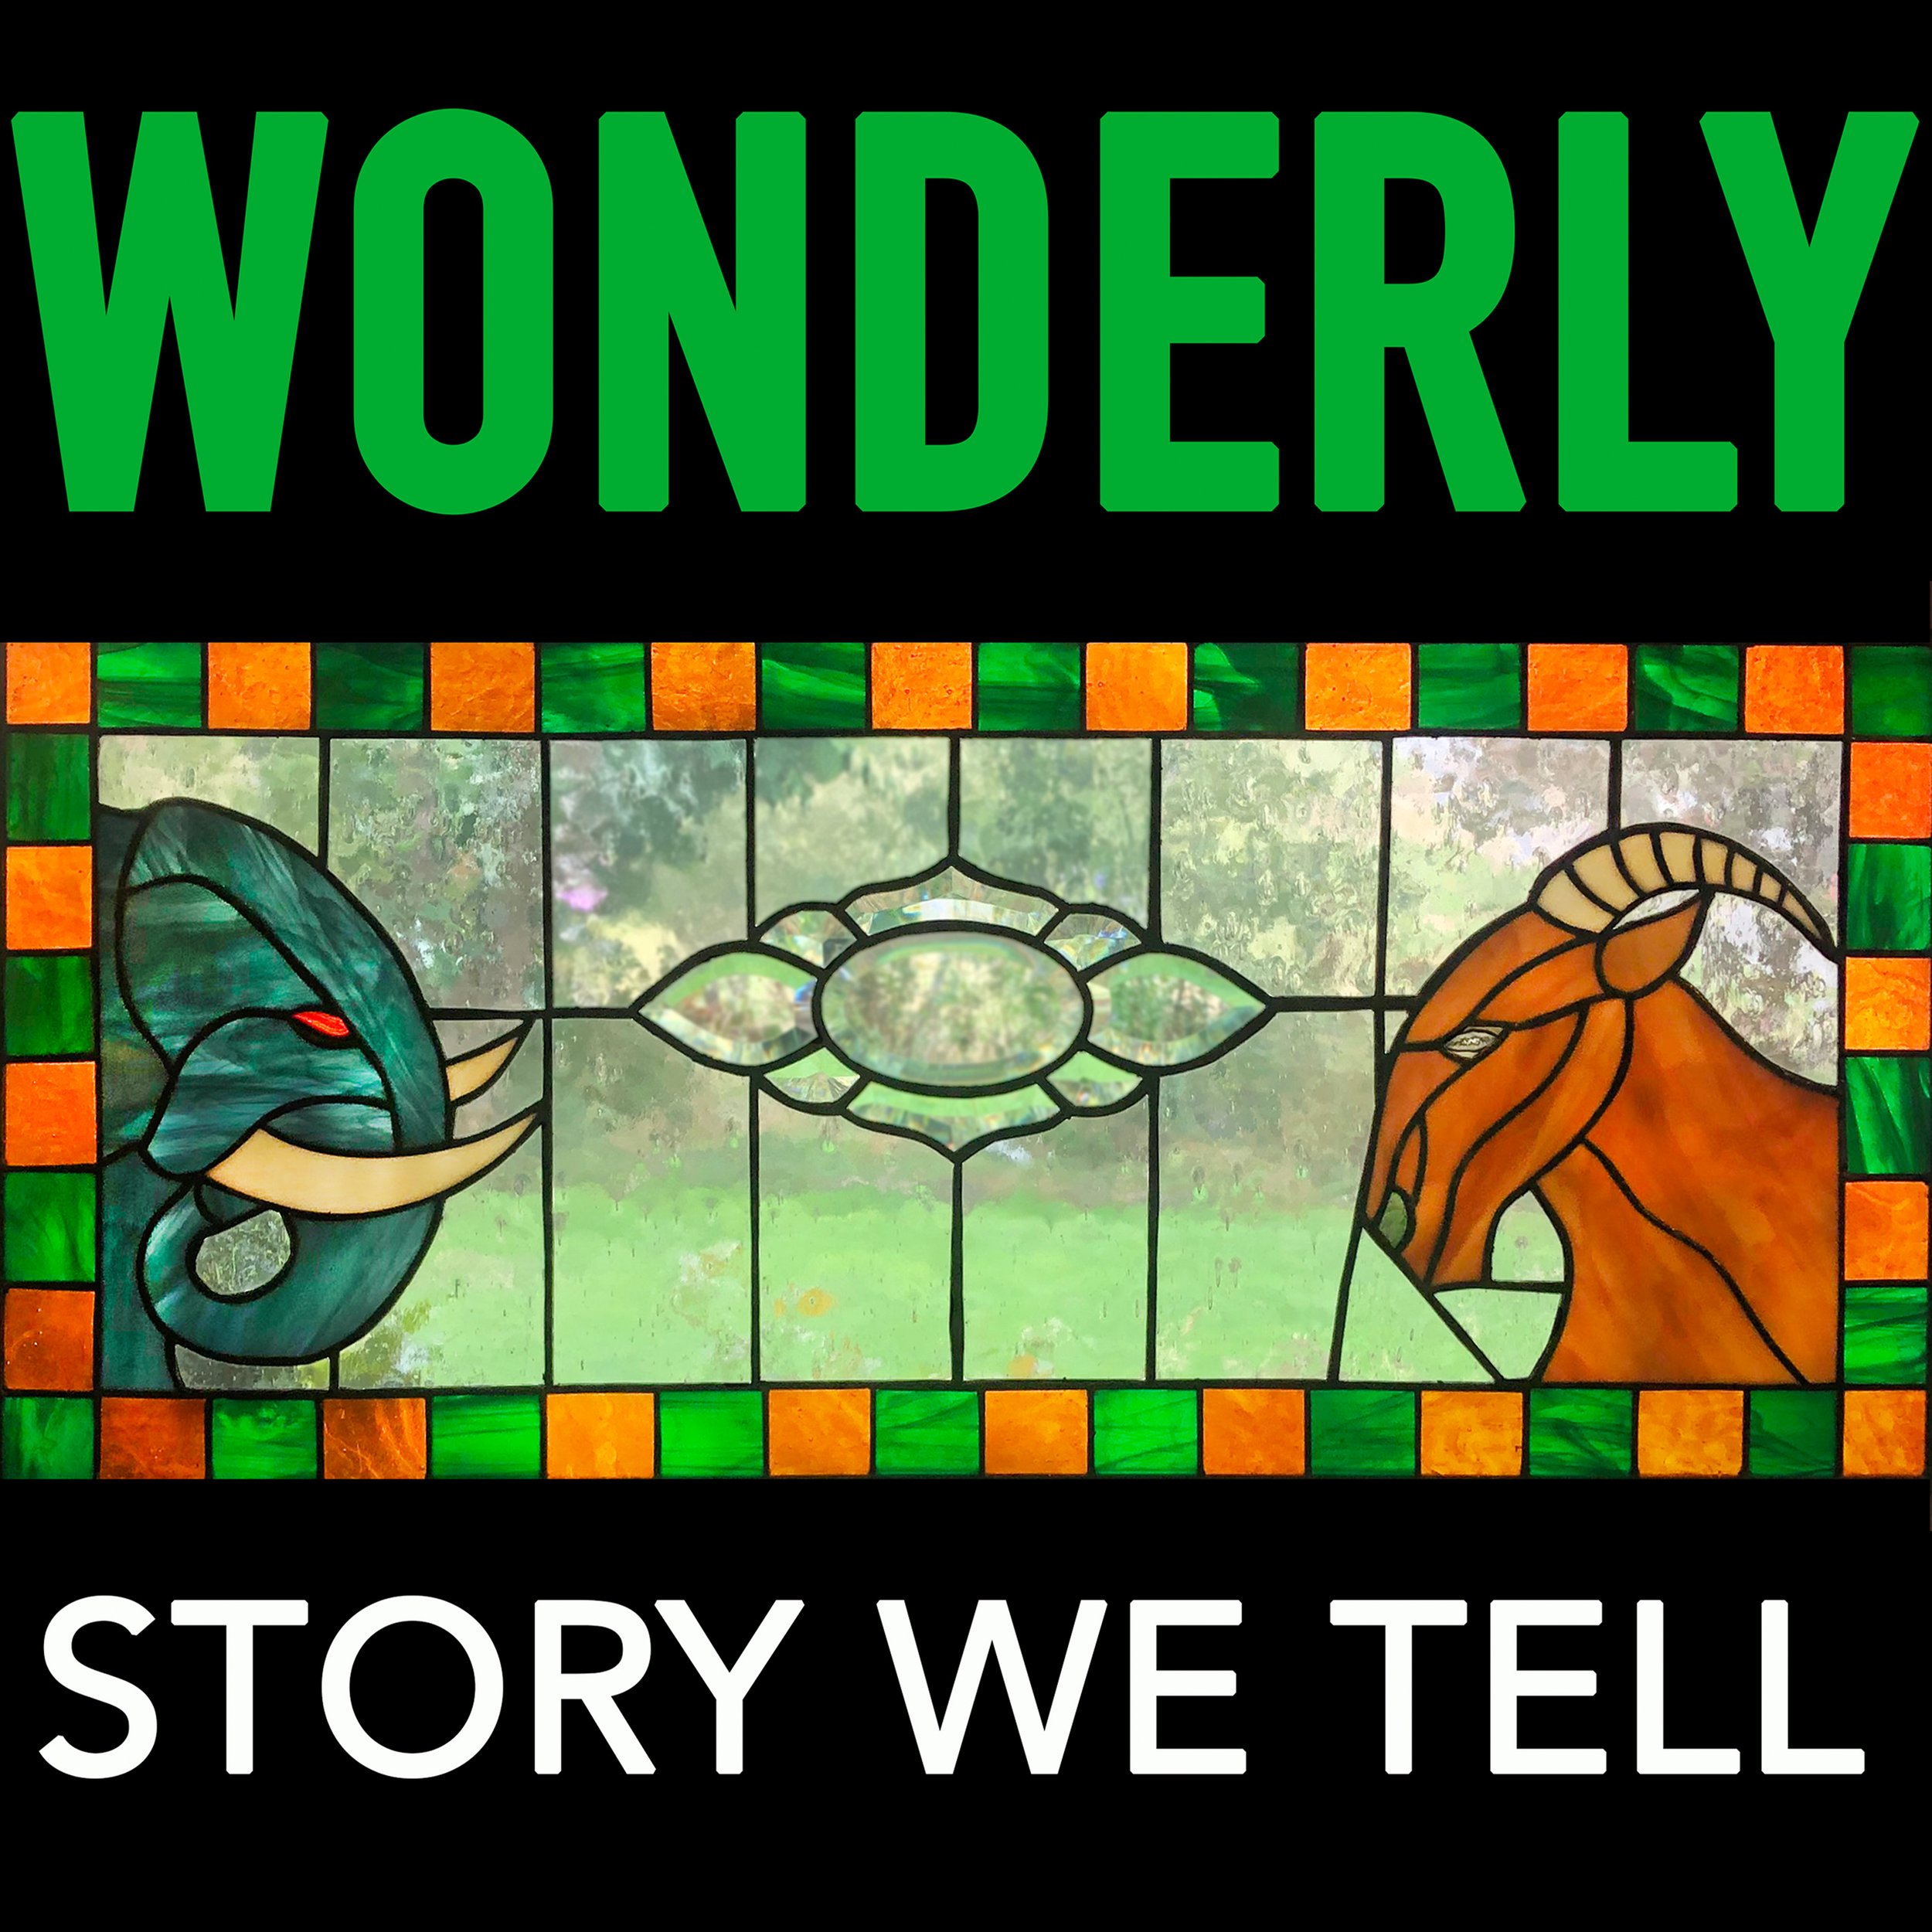 Wonderly Story We Tell official cover 3kx3k 300dpi.jpg